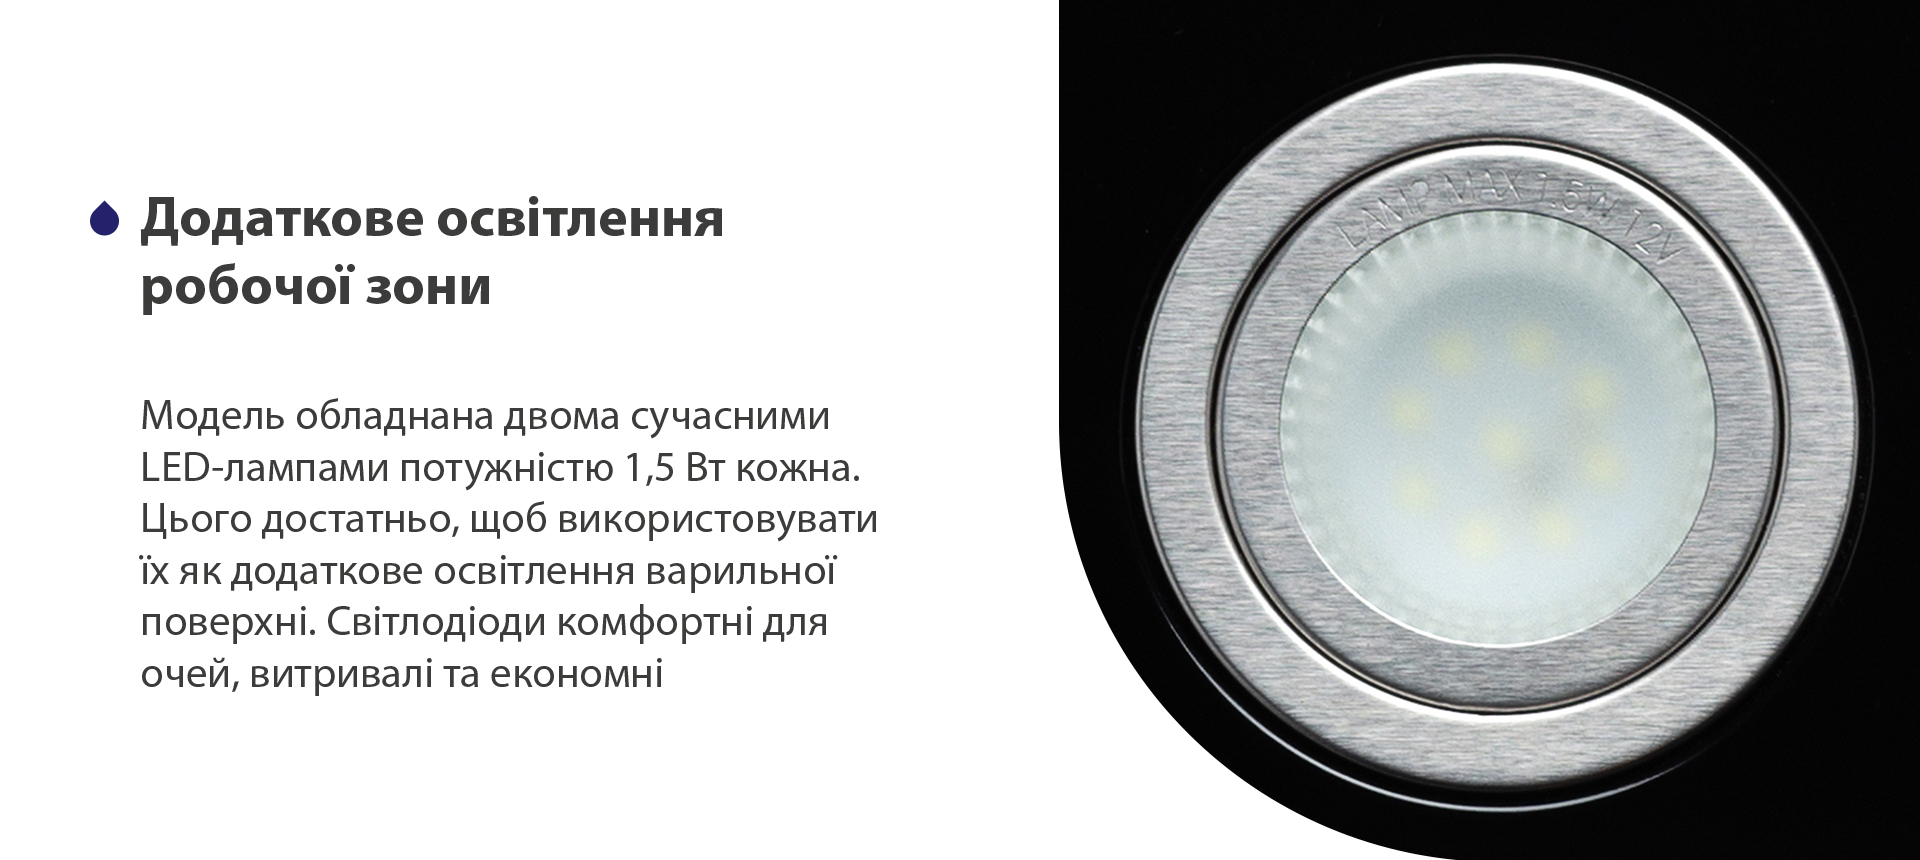 Модель обладнана двома сучасними LED-лампами потужністю 1,5 Вт кожна. Цього достатньо, щоб використовувати їх як додаткове освітлення варильної поверхні. Світлодіоди комфортні для очей, витривалі та економні